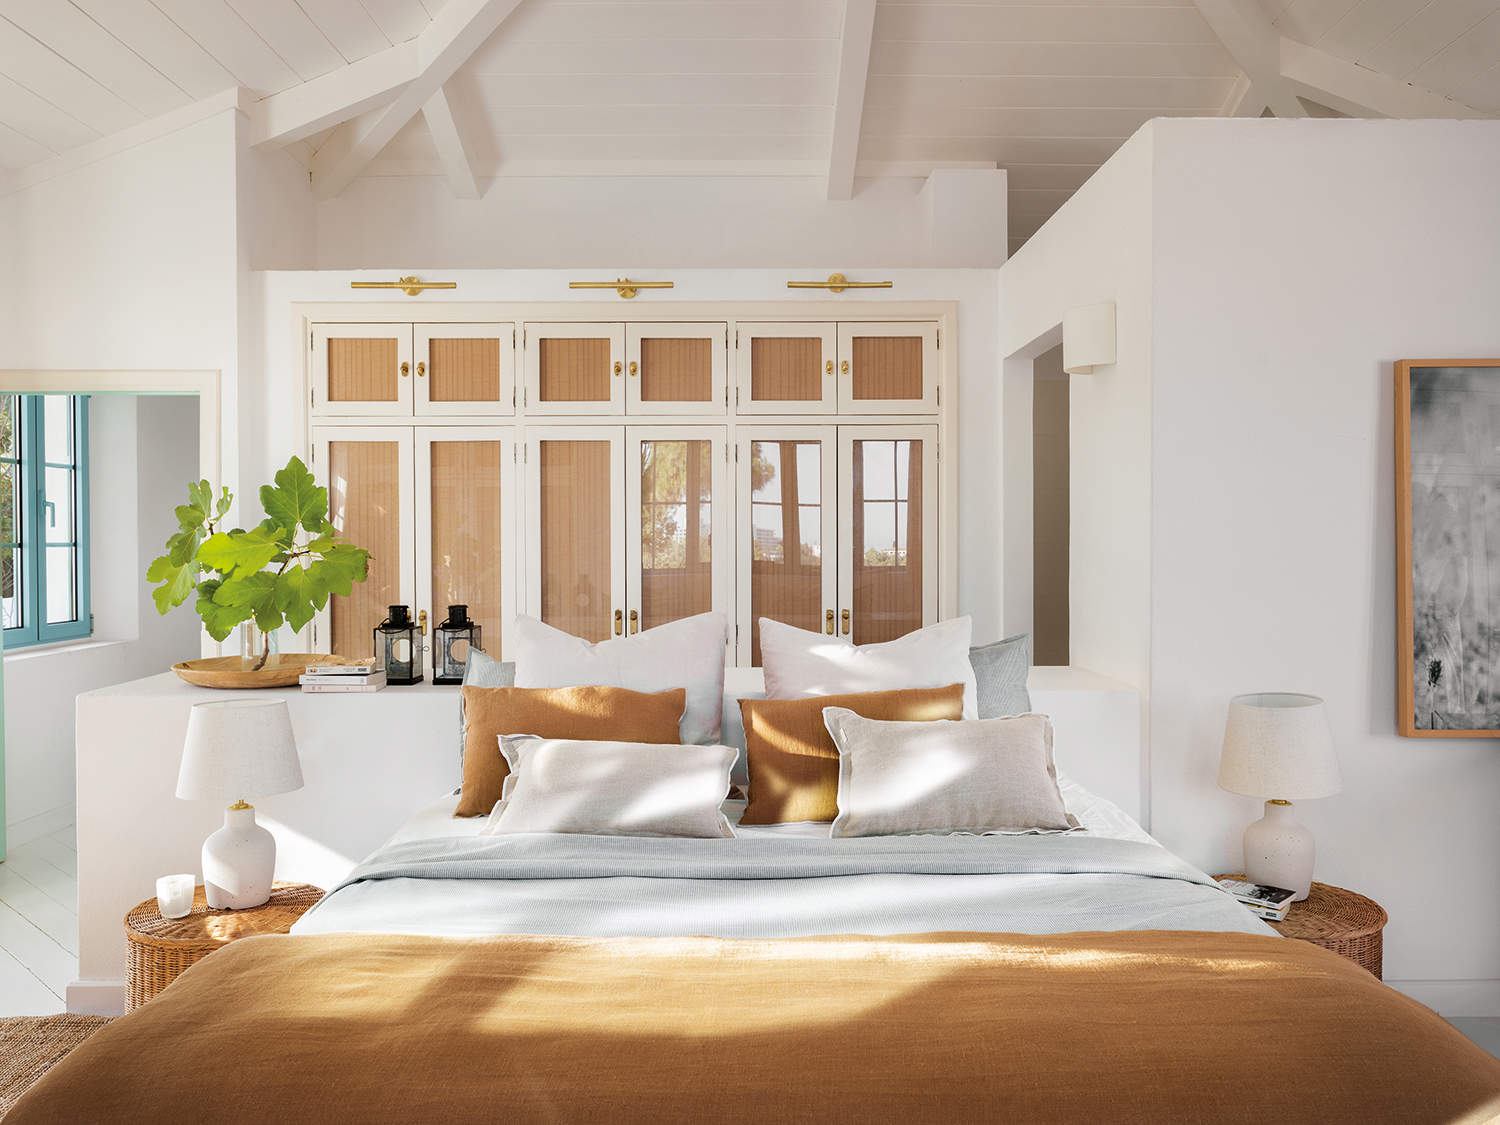 Dormitorio rústico moderno blanco con ropa de cama color tierra